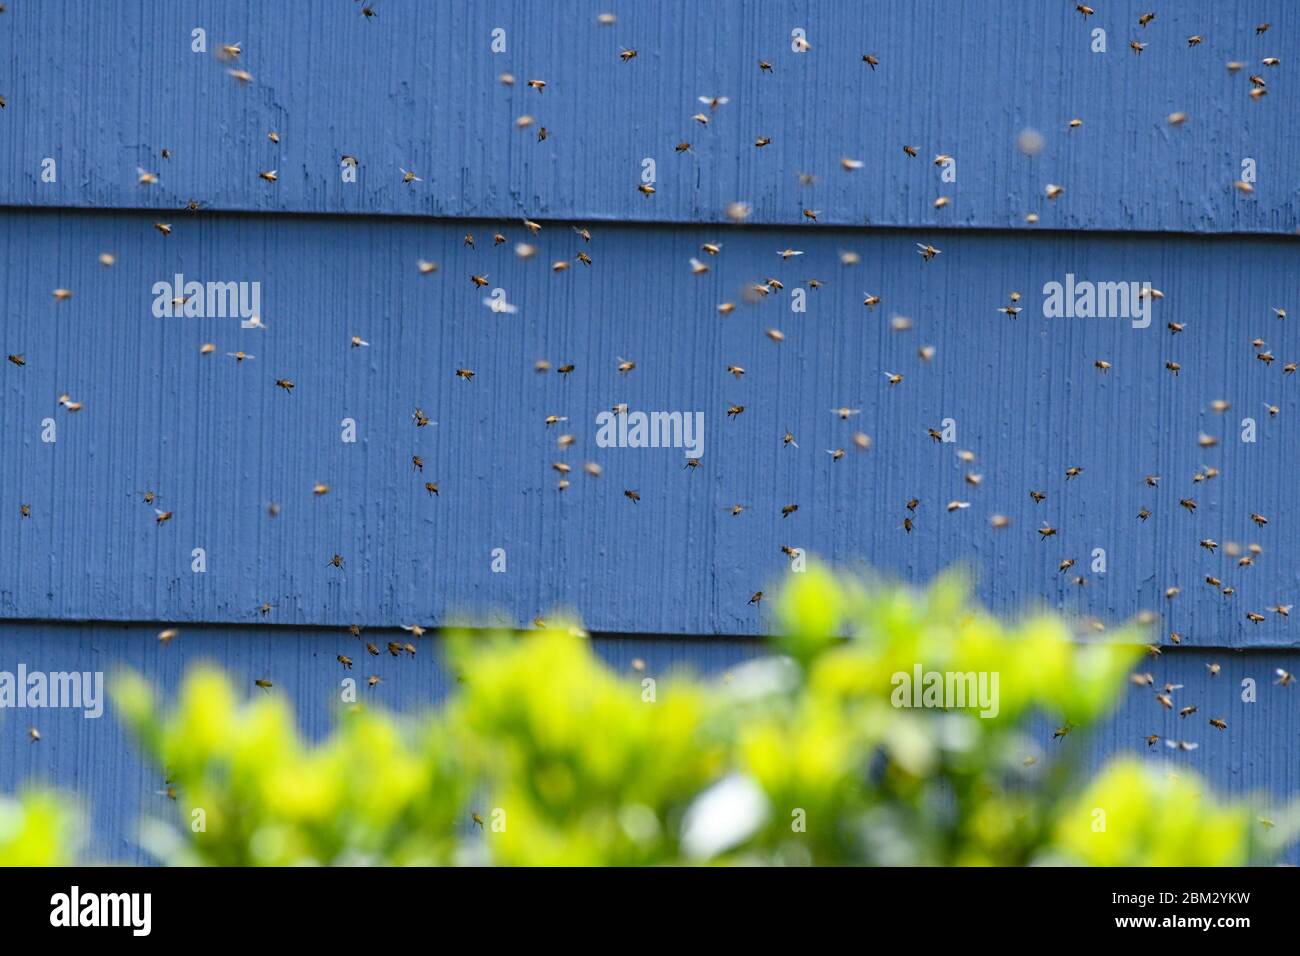 Un essaim d'abeilles - APIs mellifera - sur une maison et fait une nouvelle maison sous les bardeaux / voie d'évitement - des milliers d'abeilles de miel qui balanlent le vol dans l'air Banque D'Images